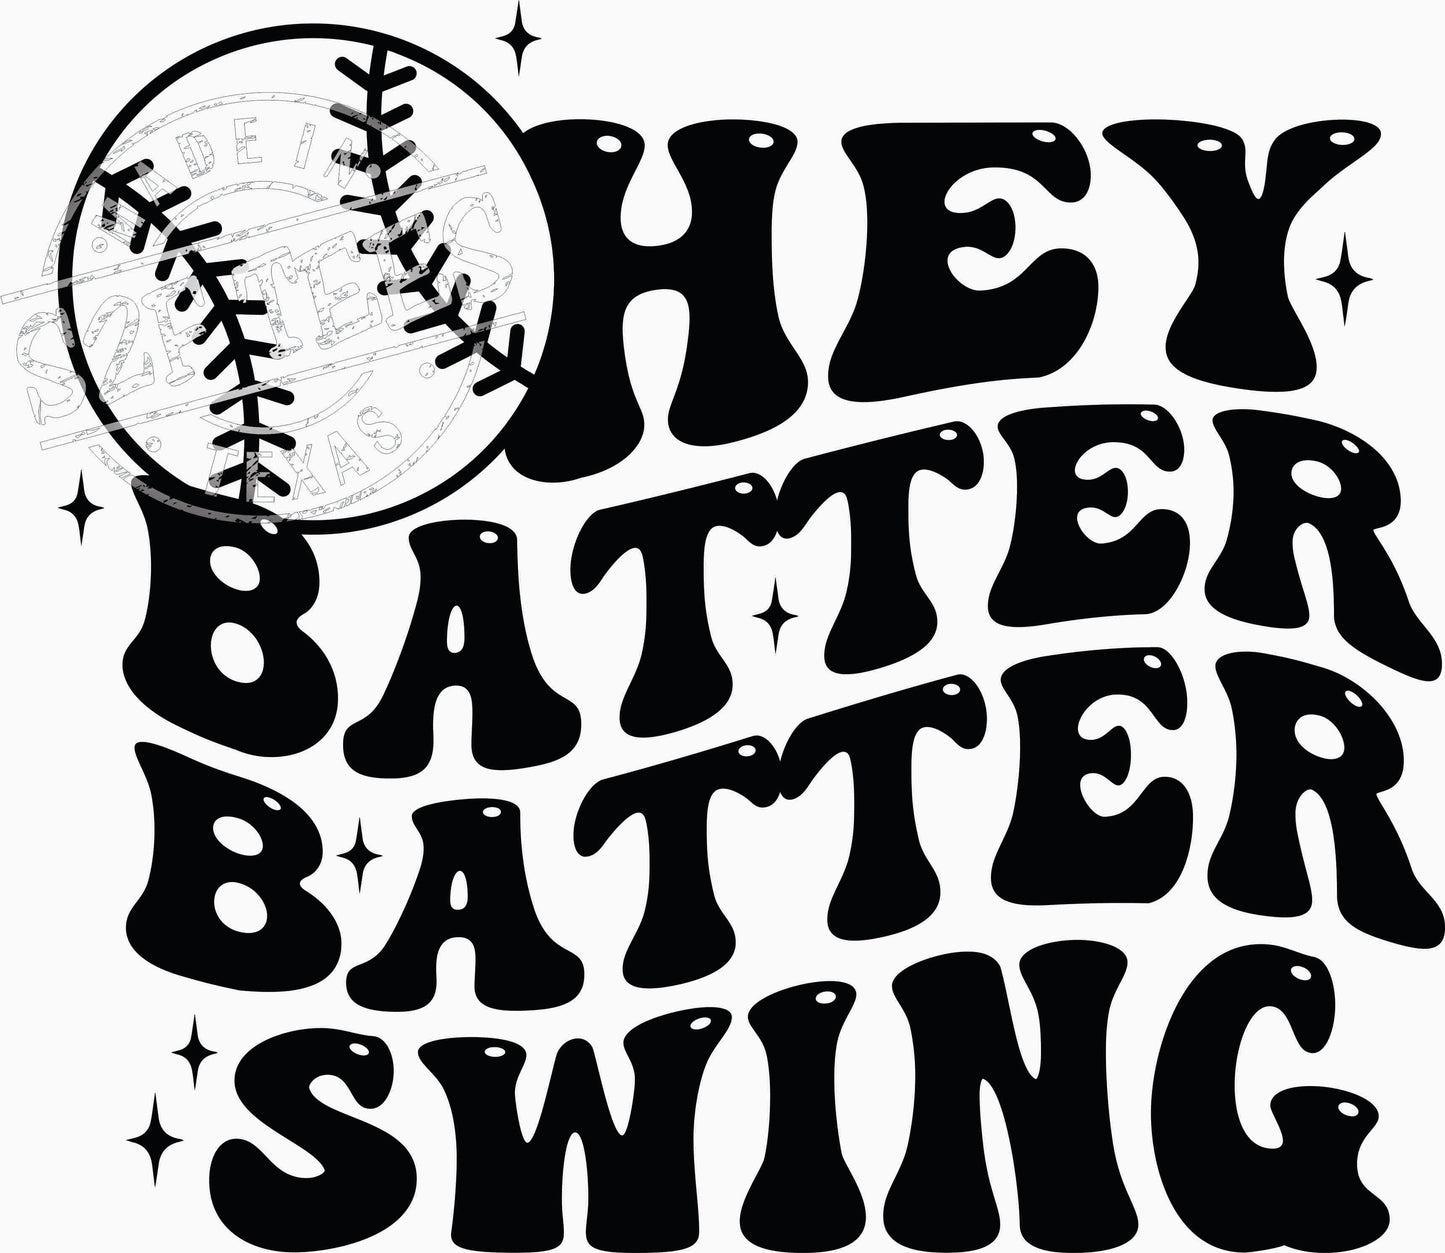 Hey Batter Batter Swing